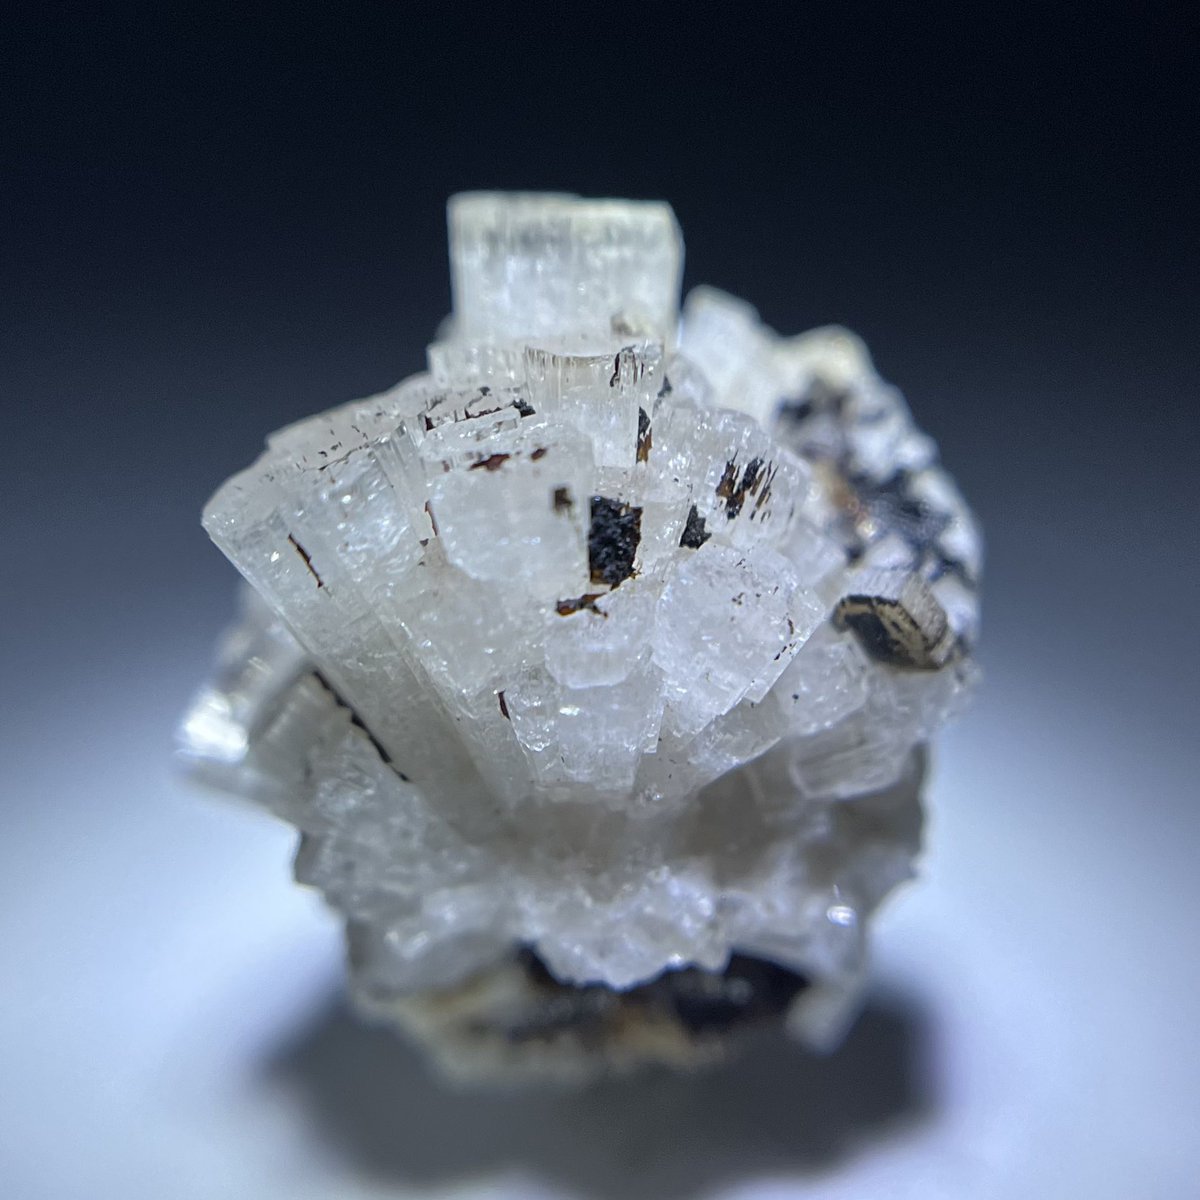 本日カナダから石が届きました✨

モンサンチレール産のレイフ石(Leifite)
ベリリウムを含む稀産鉱物です😊

#自分が持っているベリリウムを含む鉱物を見せてください